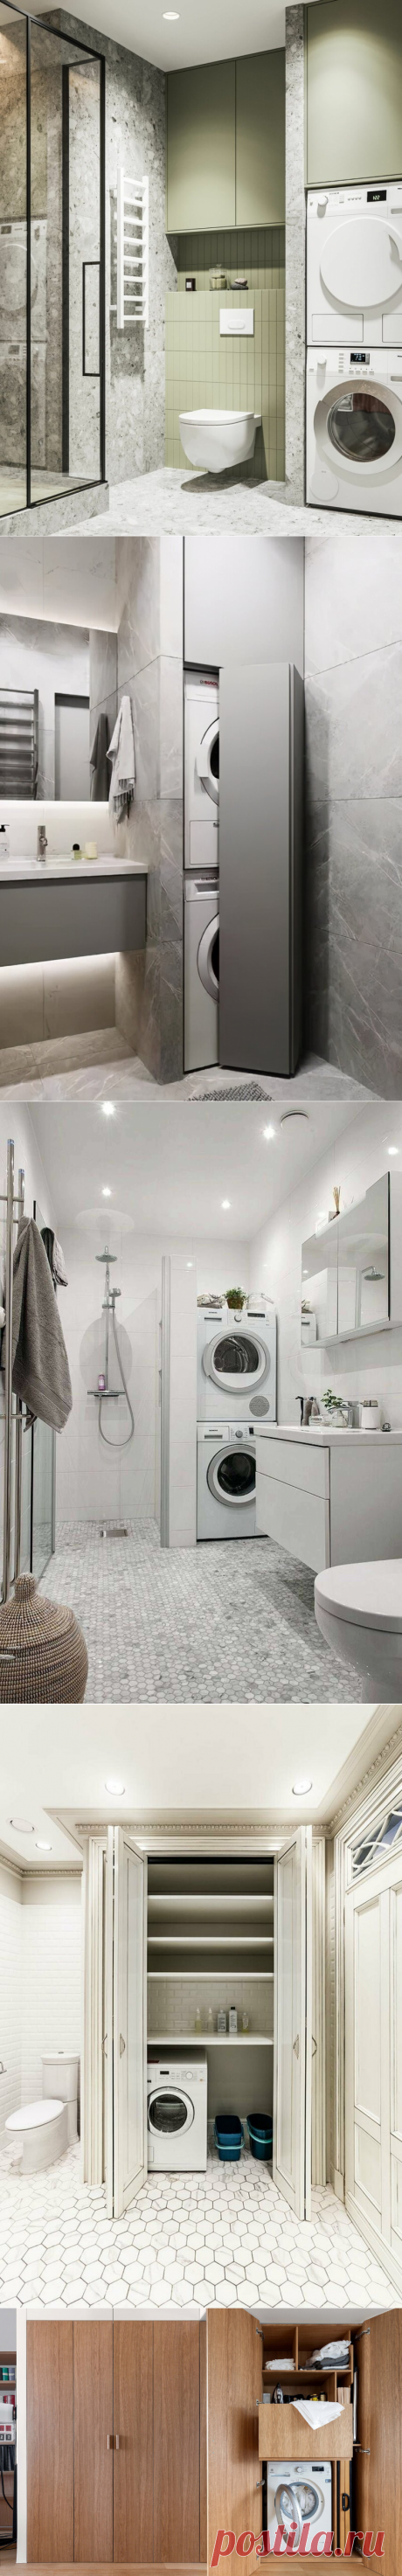 Куда поставить стиральную машинку в квартире: 5 вариантов | Expostroy | Яндекс Дзен